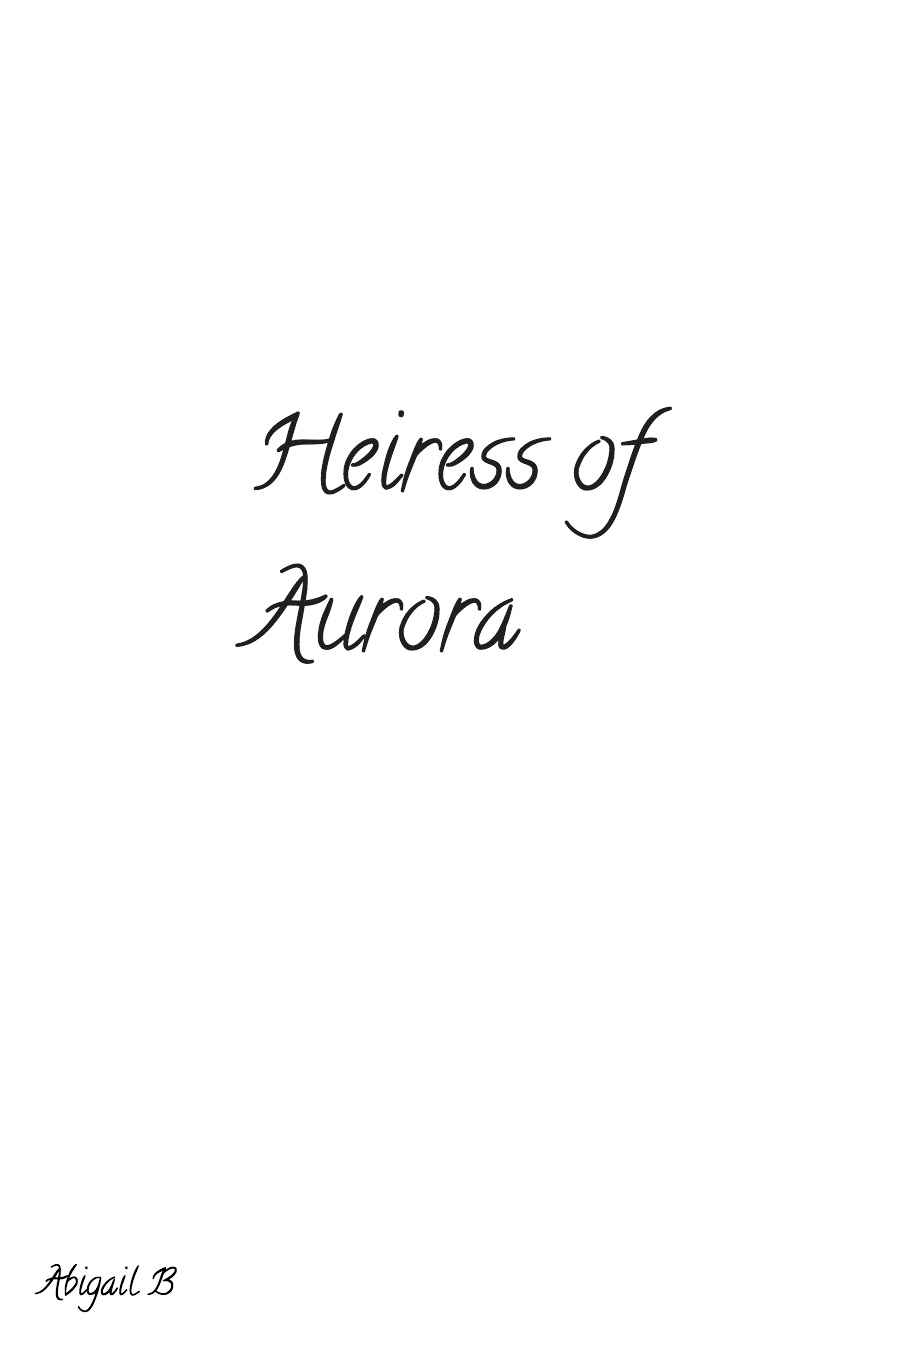 Heiress of Aurora by Abigail B